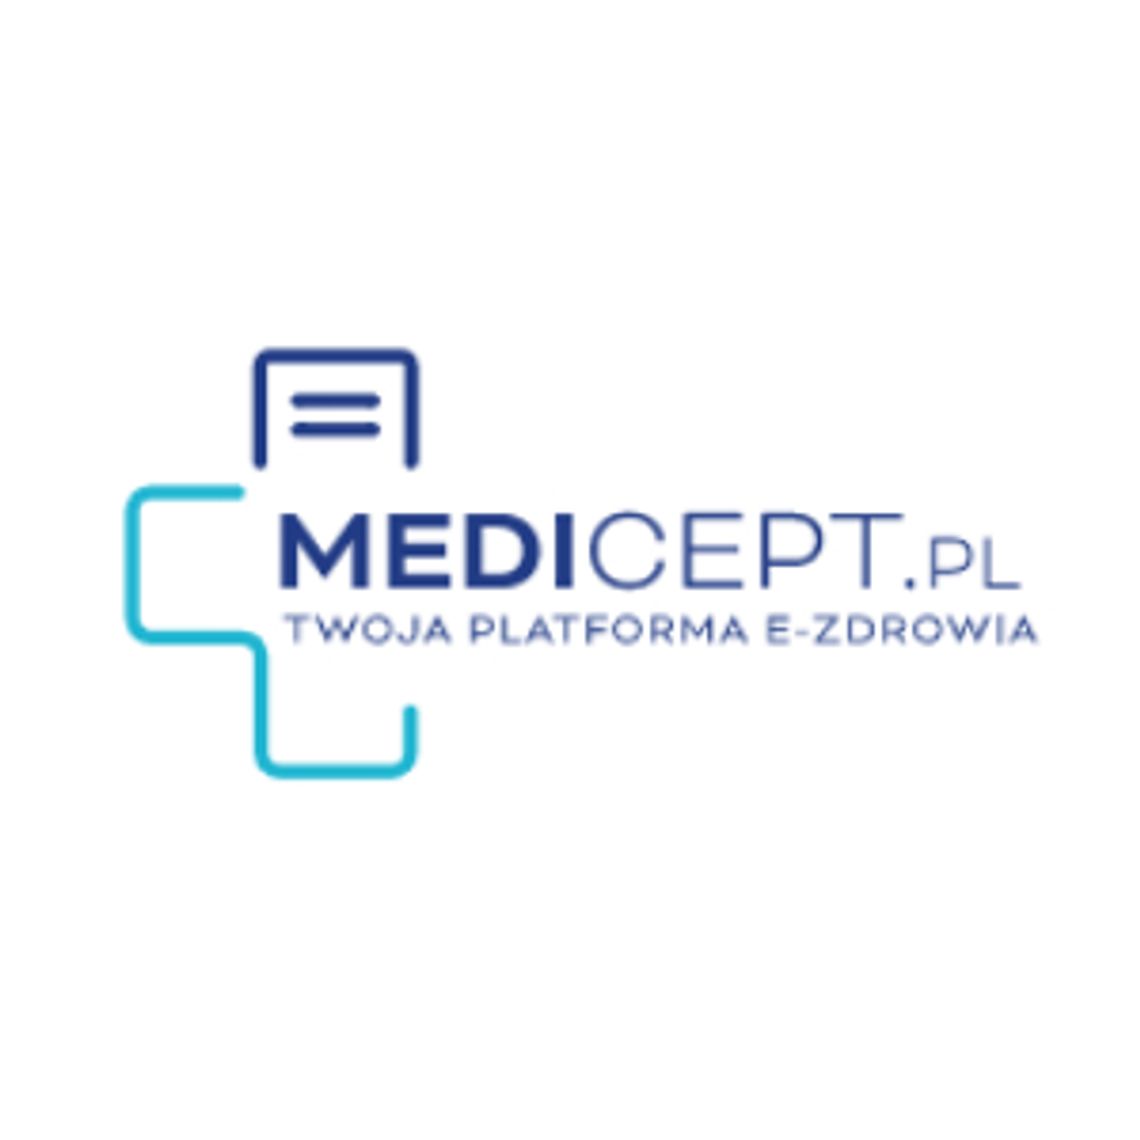 Teleporada lekarska - Medicept